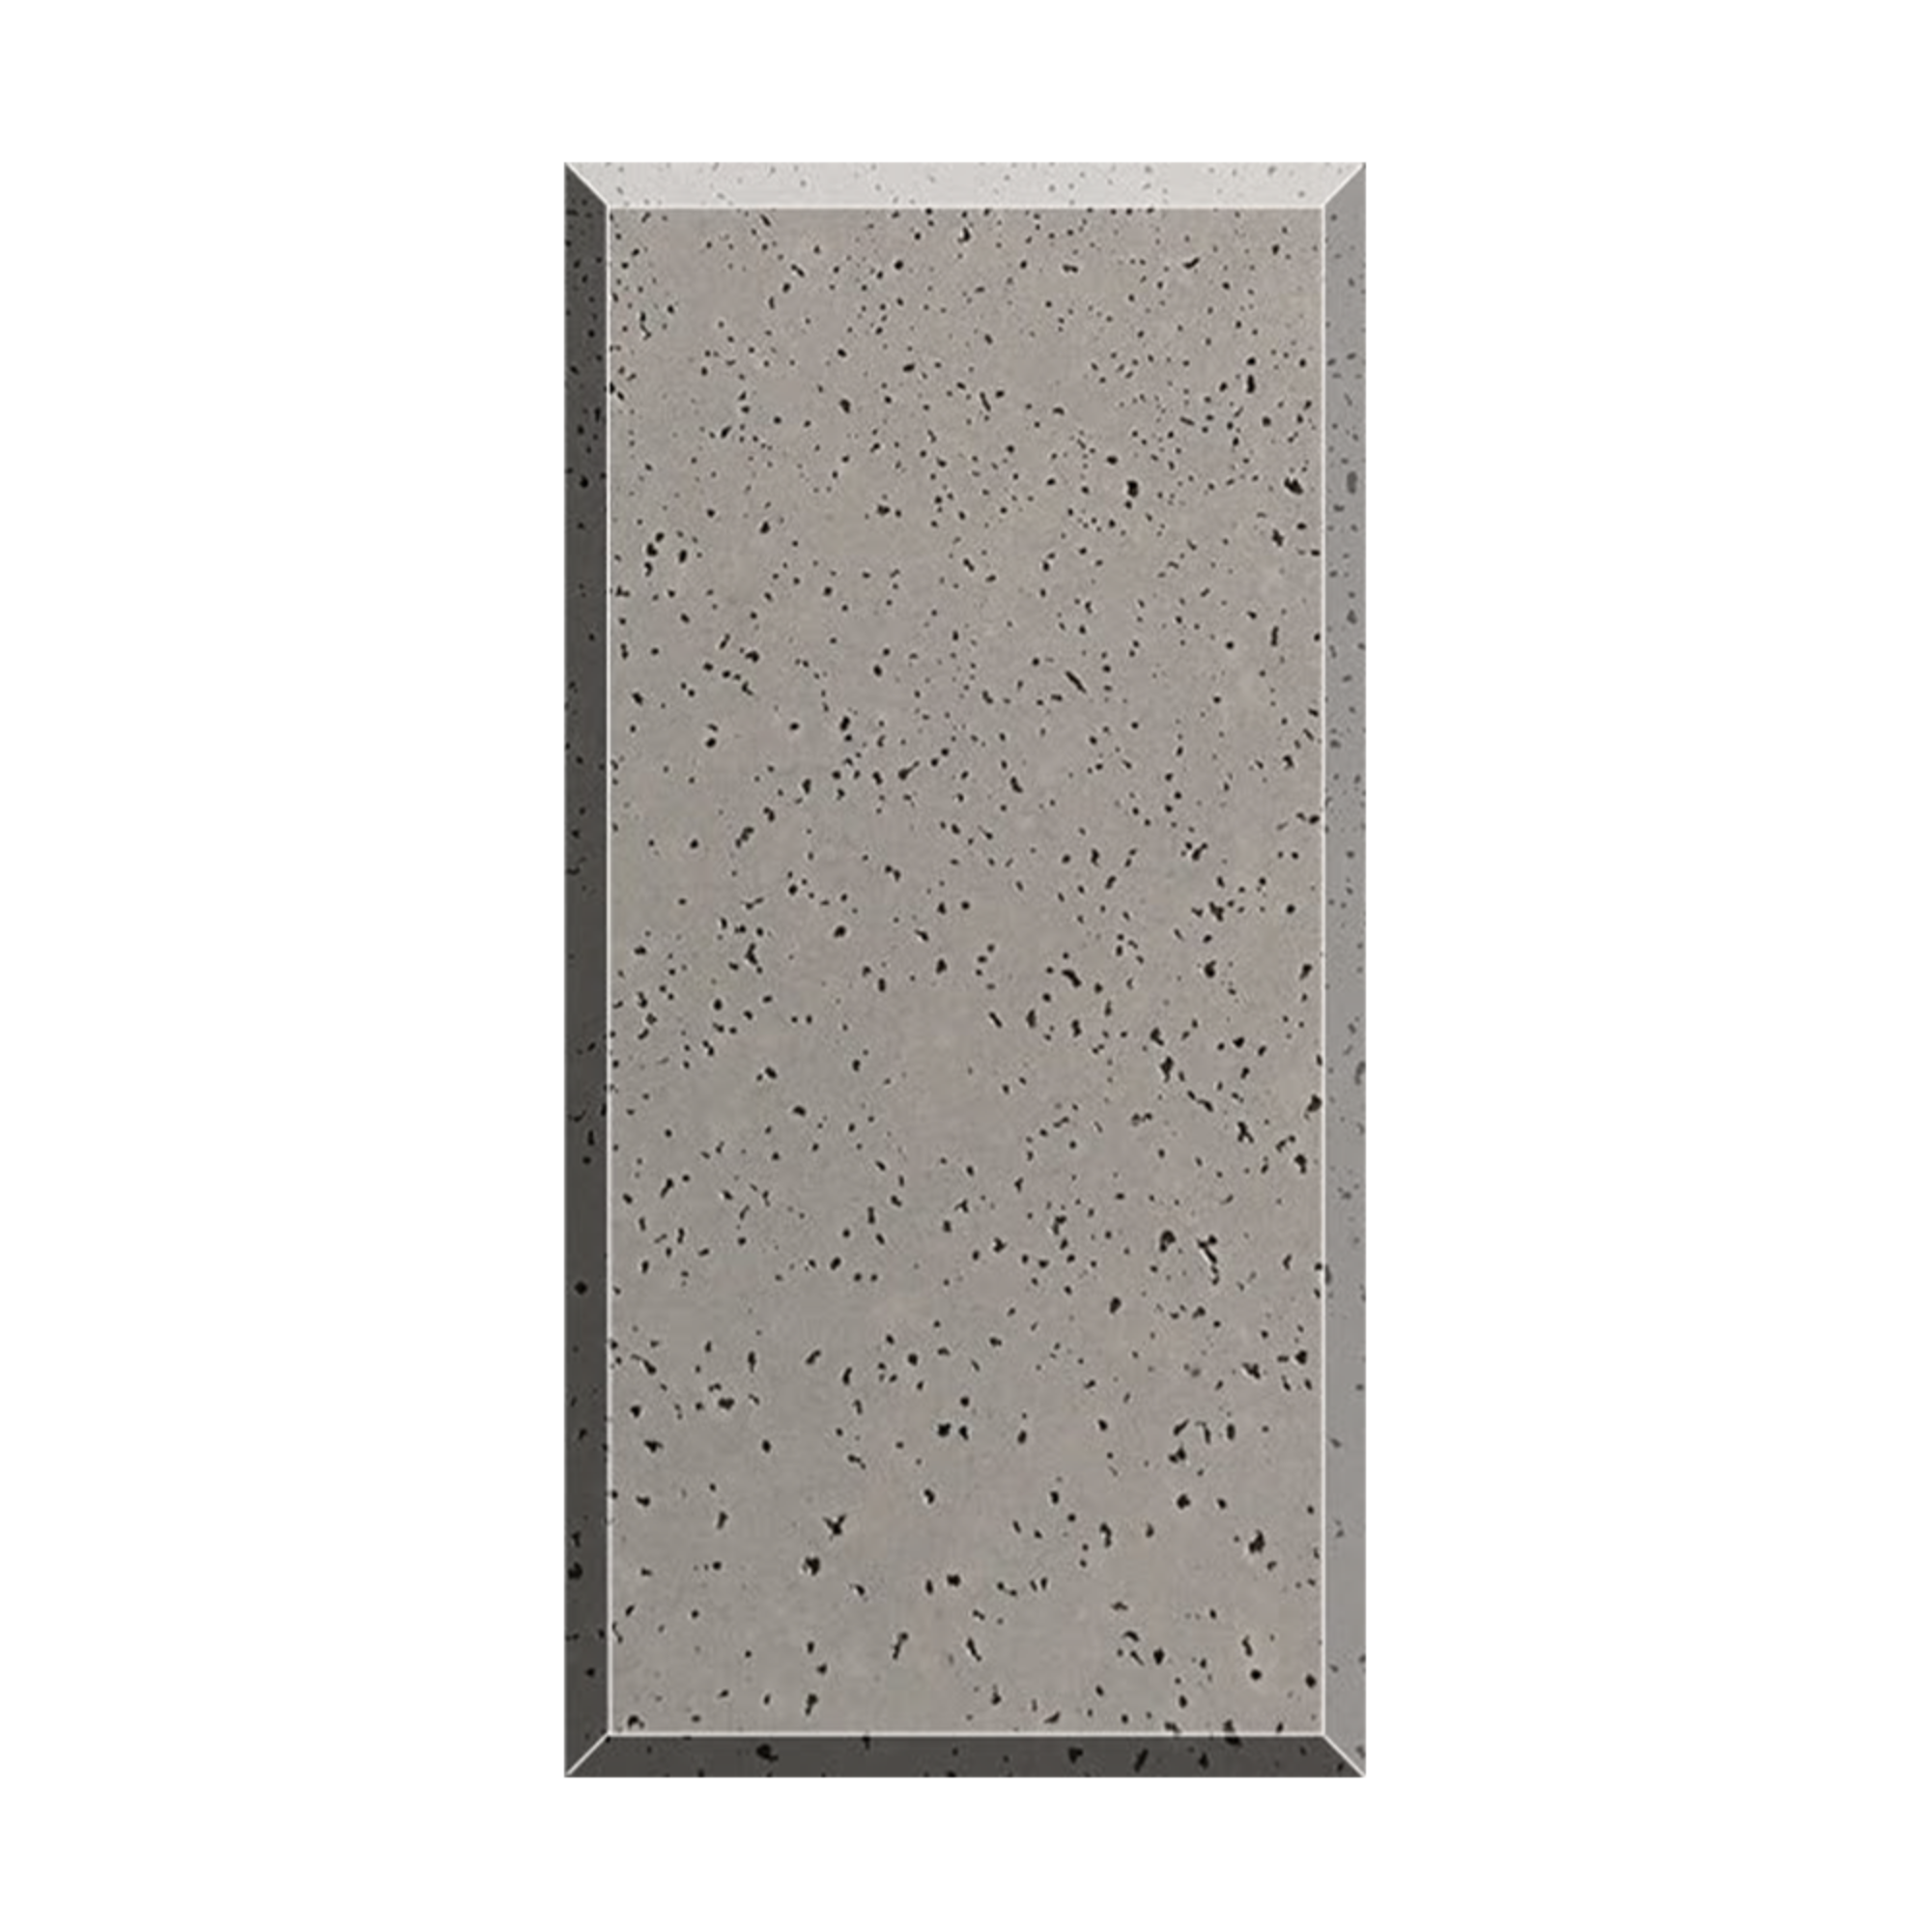  Travertine Concrete Board